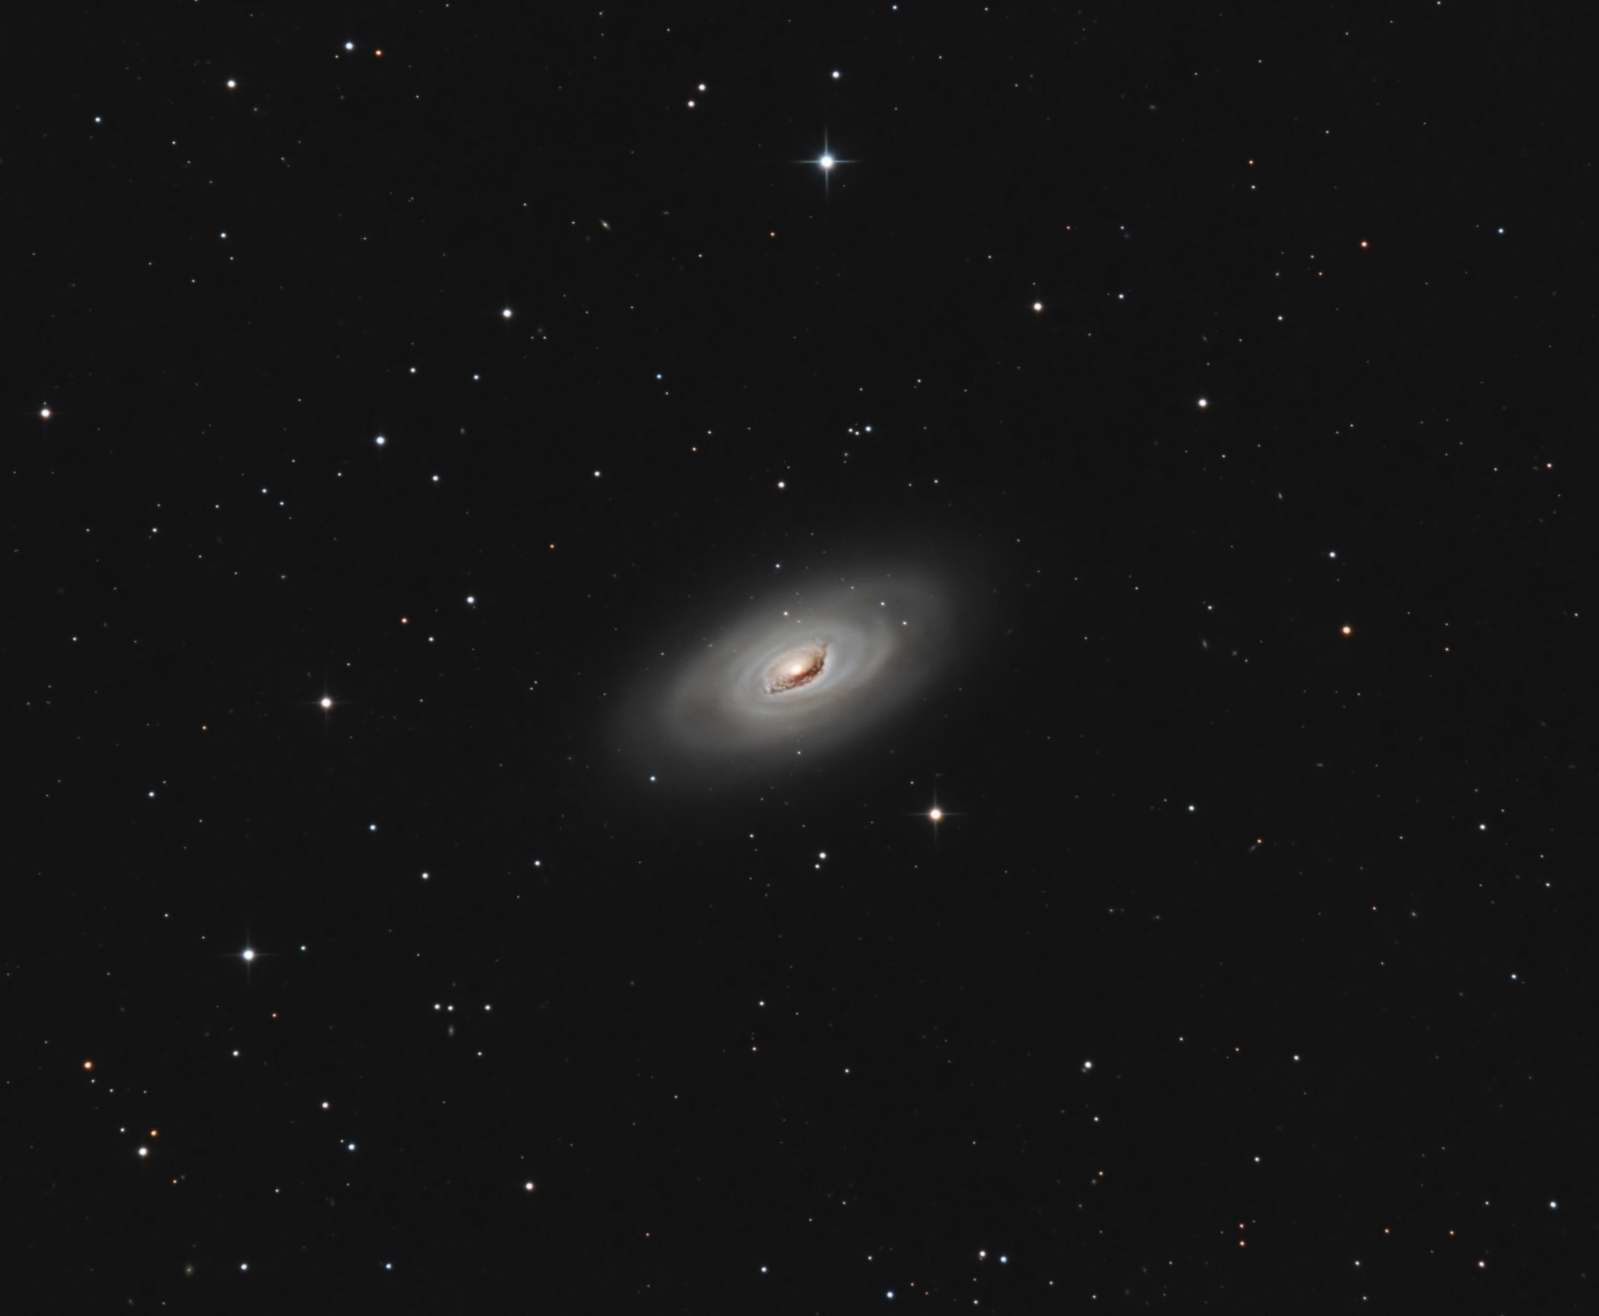 The Black Eye Galaxy - M64